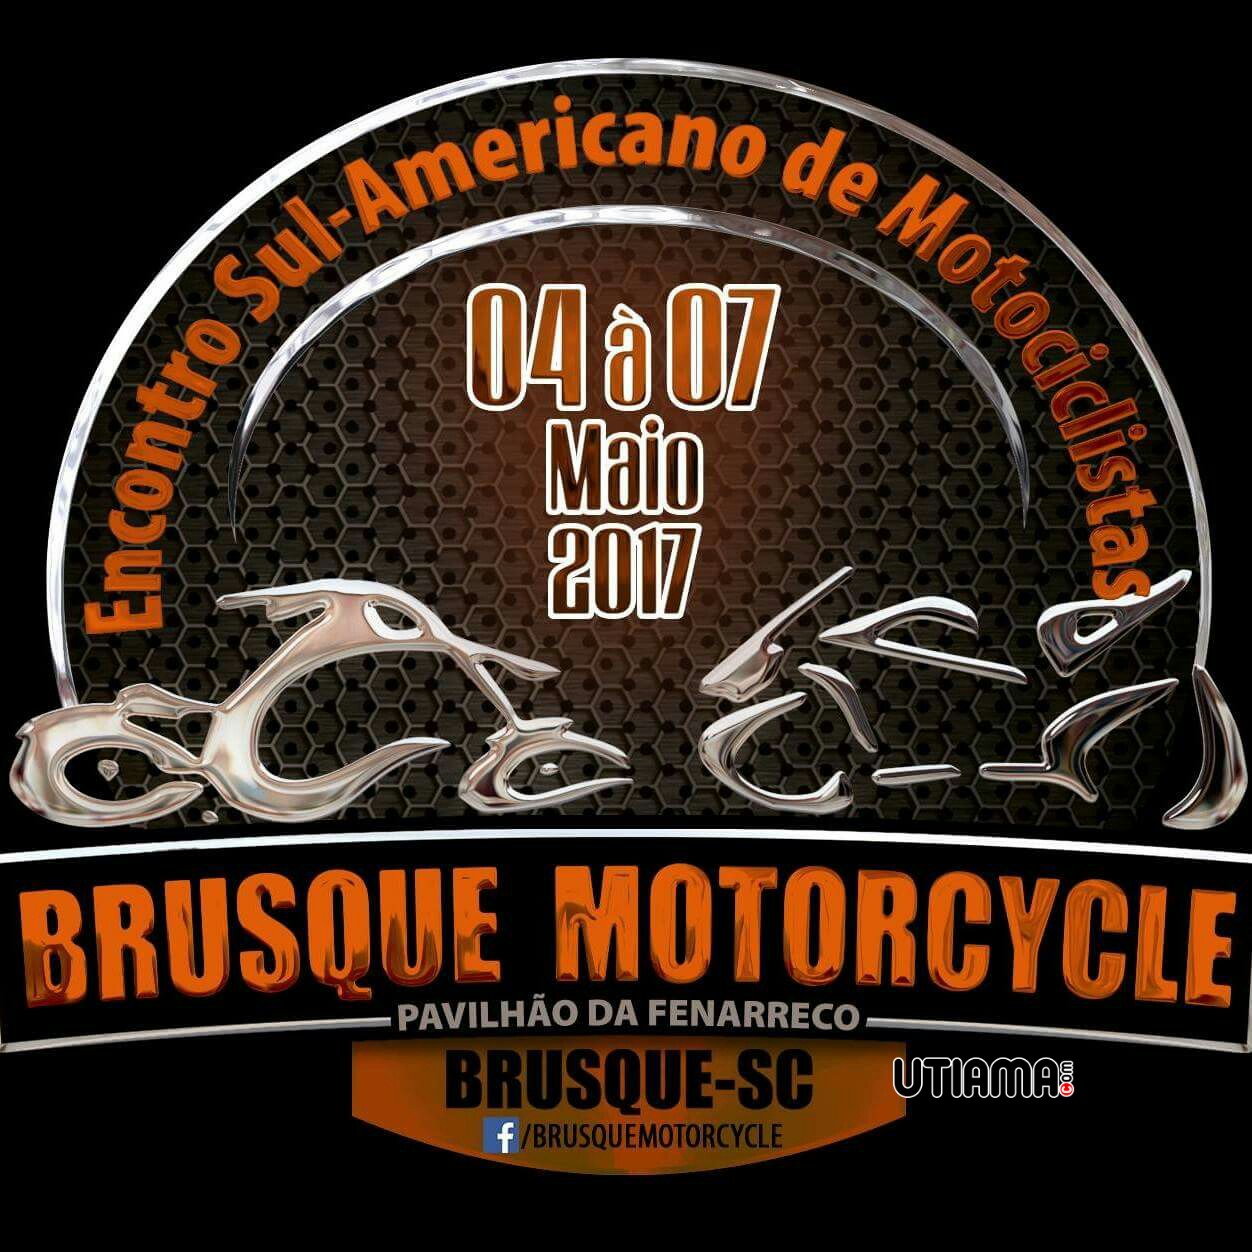 Brusque Motorcycle 2017